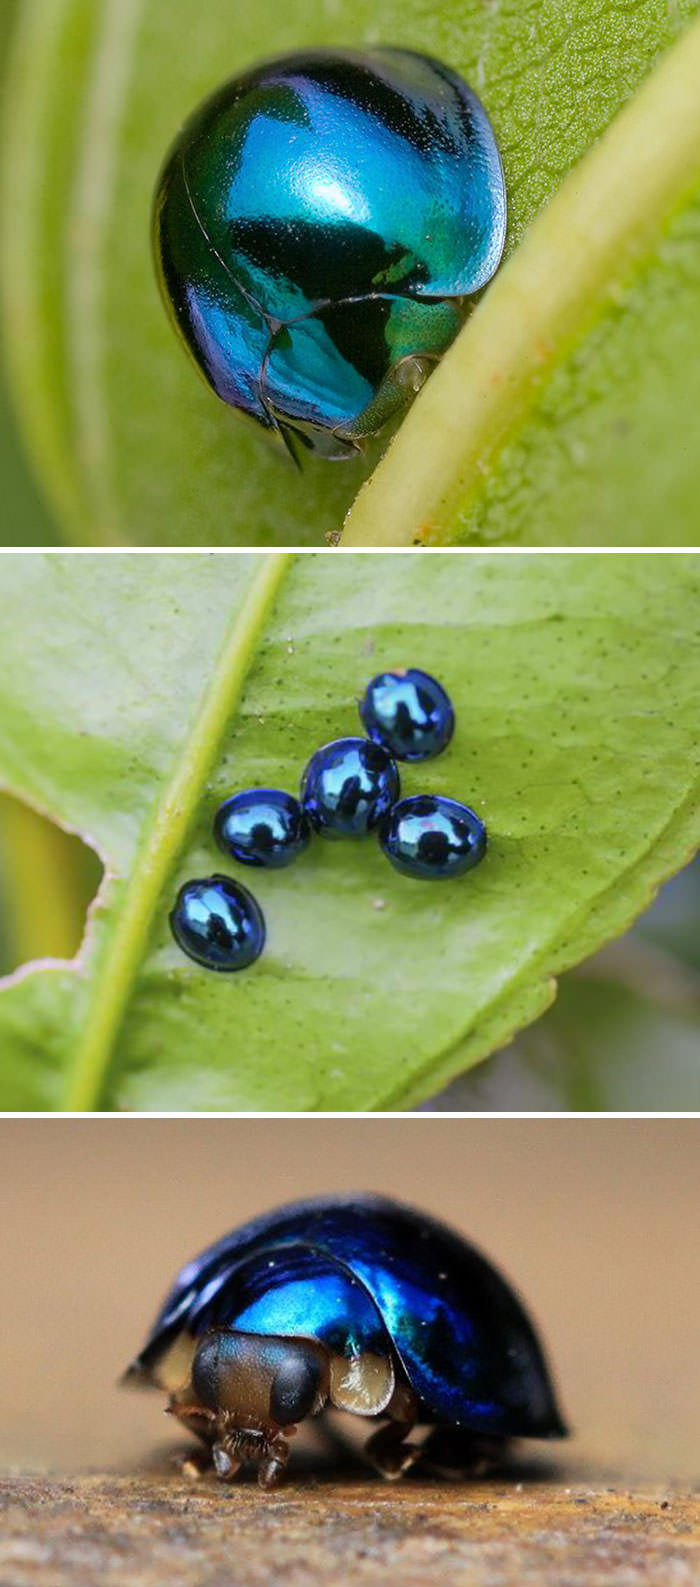 Steel blue ladybug